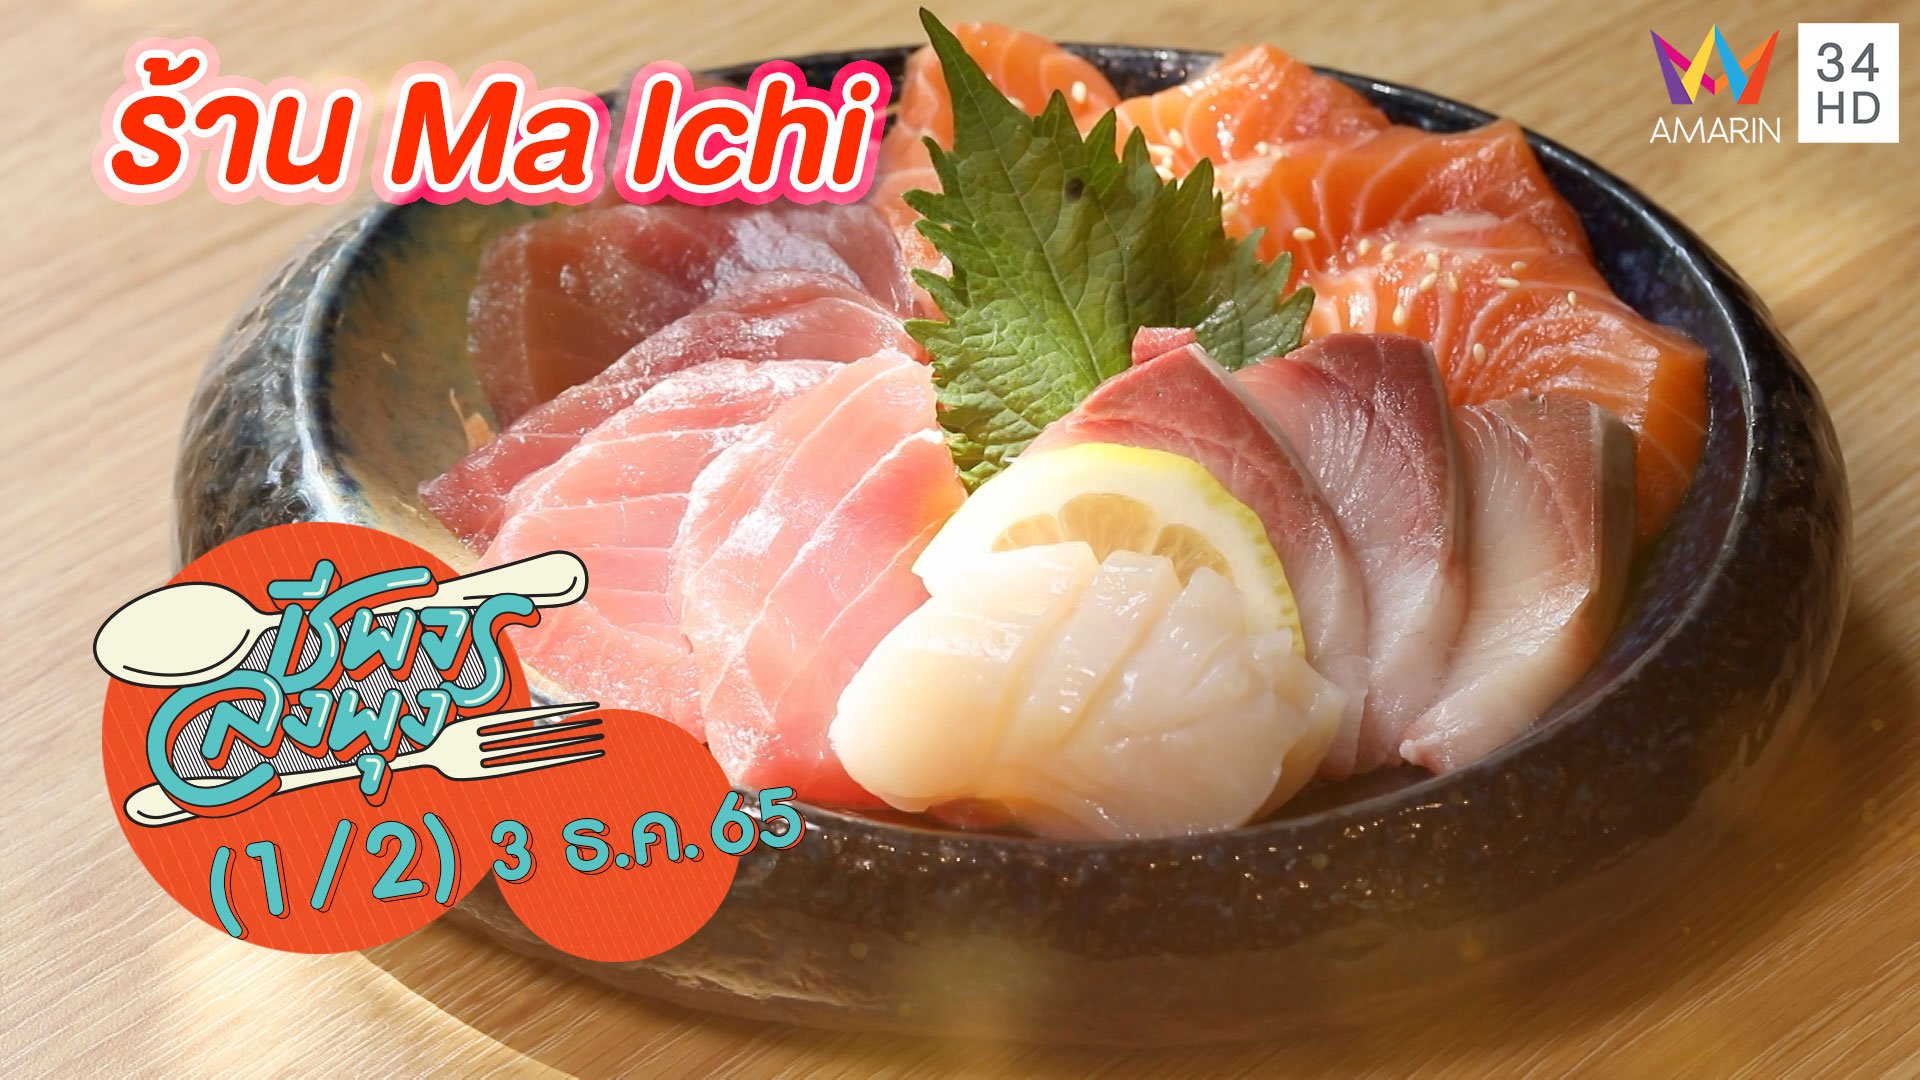 อาหารญี่ปุ่นสไตล์ฟิวชัน @ ร้าน Ma Ichi | ชีพจรลงพุง | 3 ธ.ค. 65 (1/2) | AMARIN TVHD34